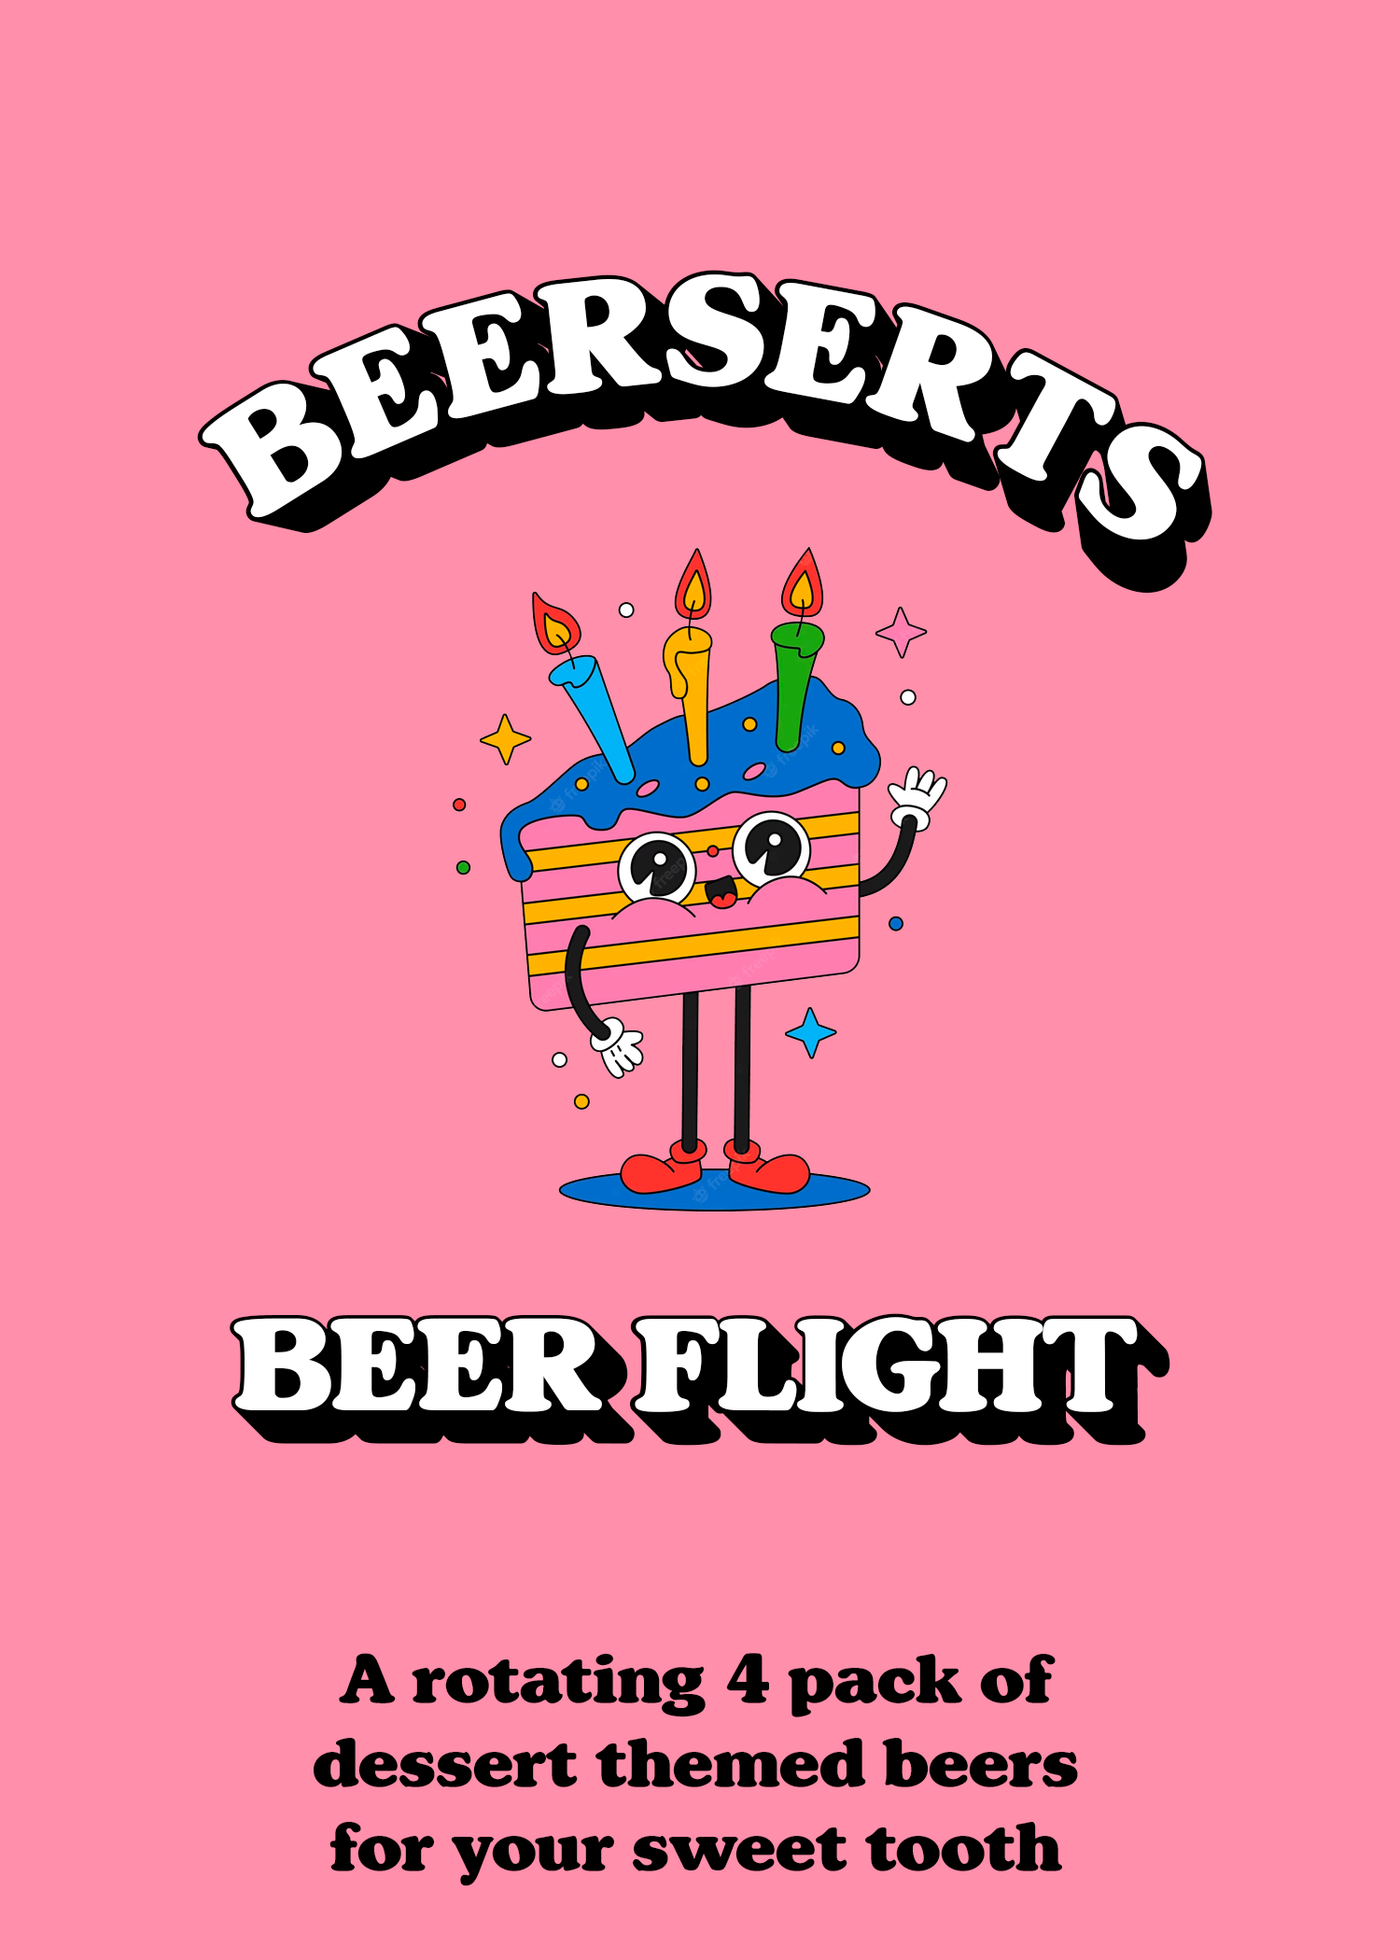 BEERSERTS | Beer Flight